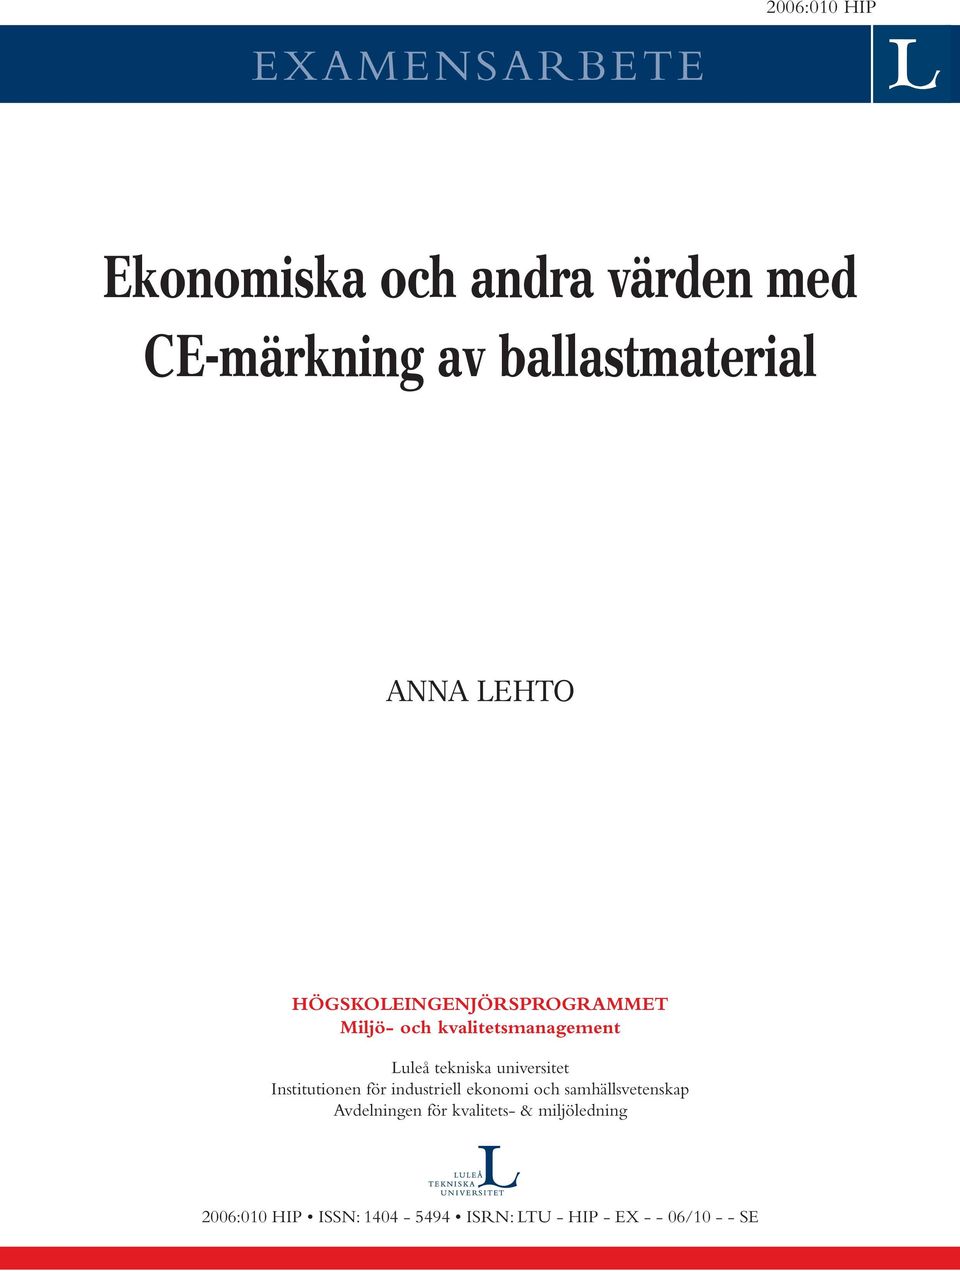 Luleå tekniska universitet Institutionen för industriell ekonomi och samhällsvetenskap